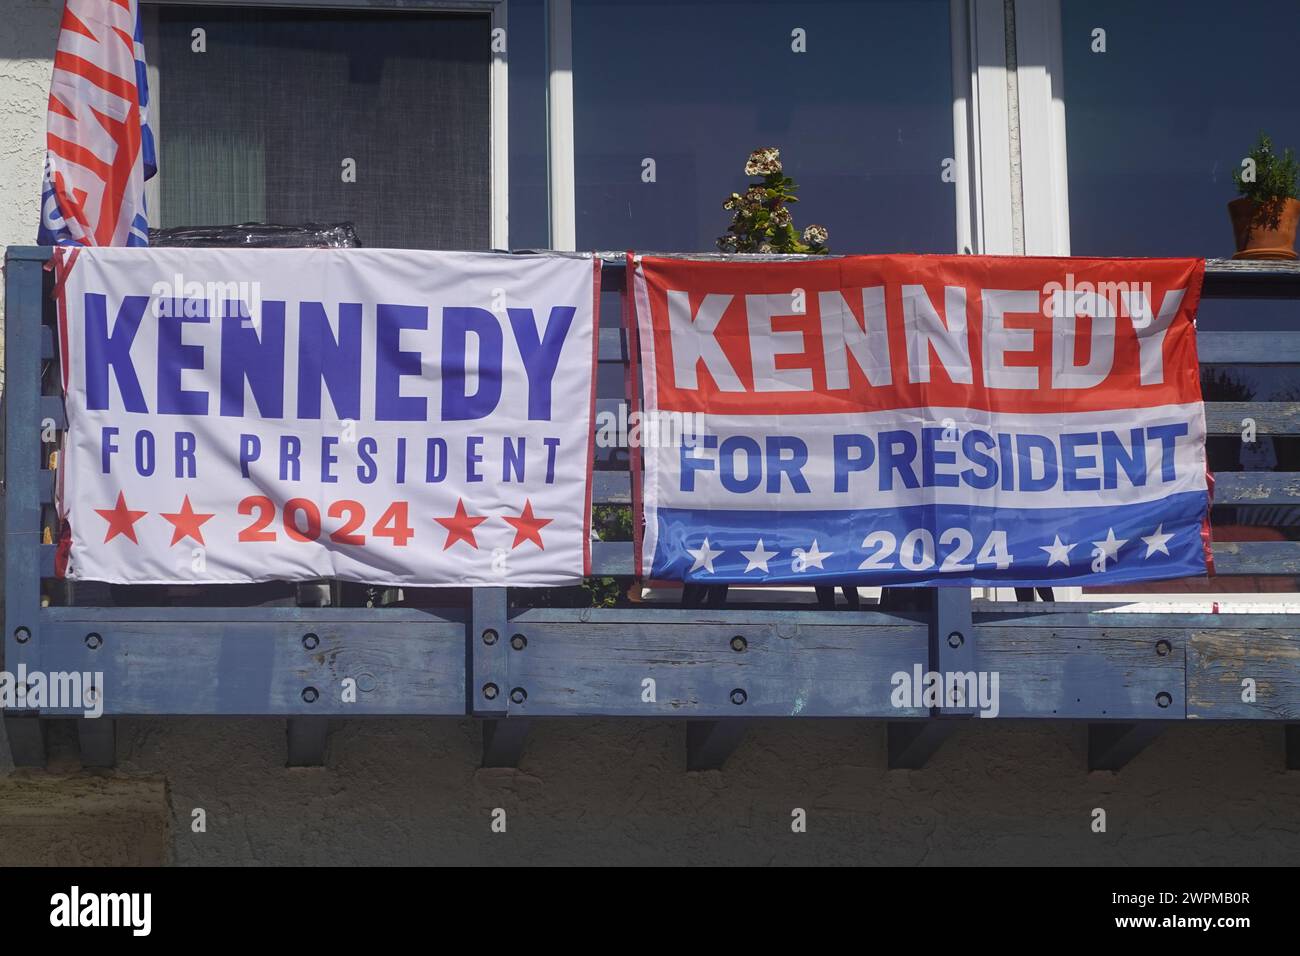 Kennedy pour le président 2024 affiche Santa Monica, Californie, États-Unis Banque D'Images